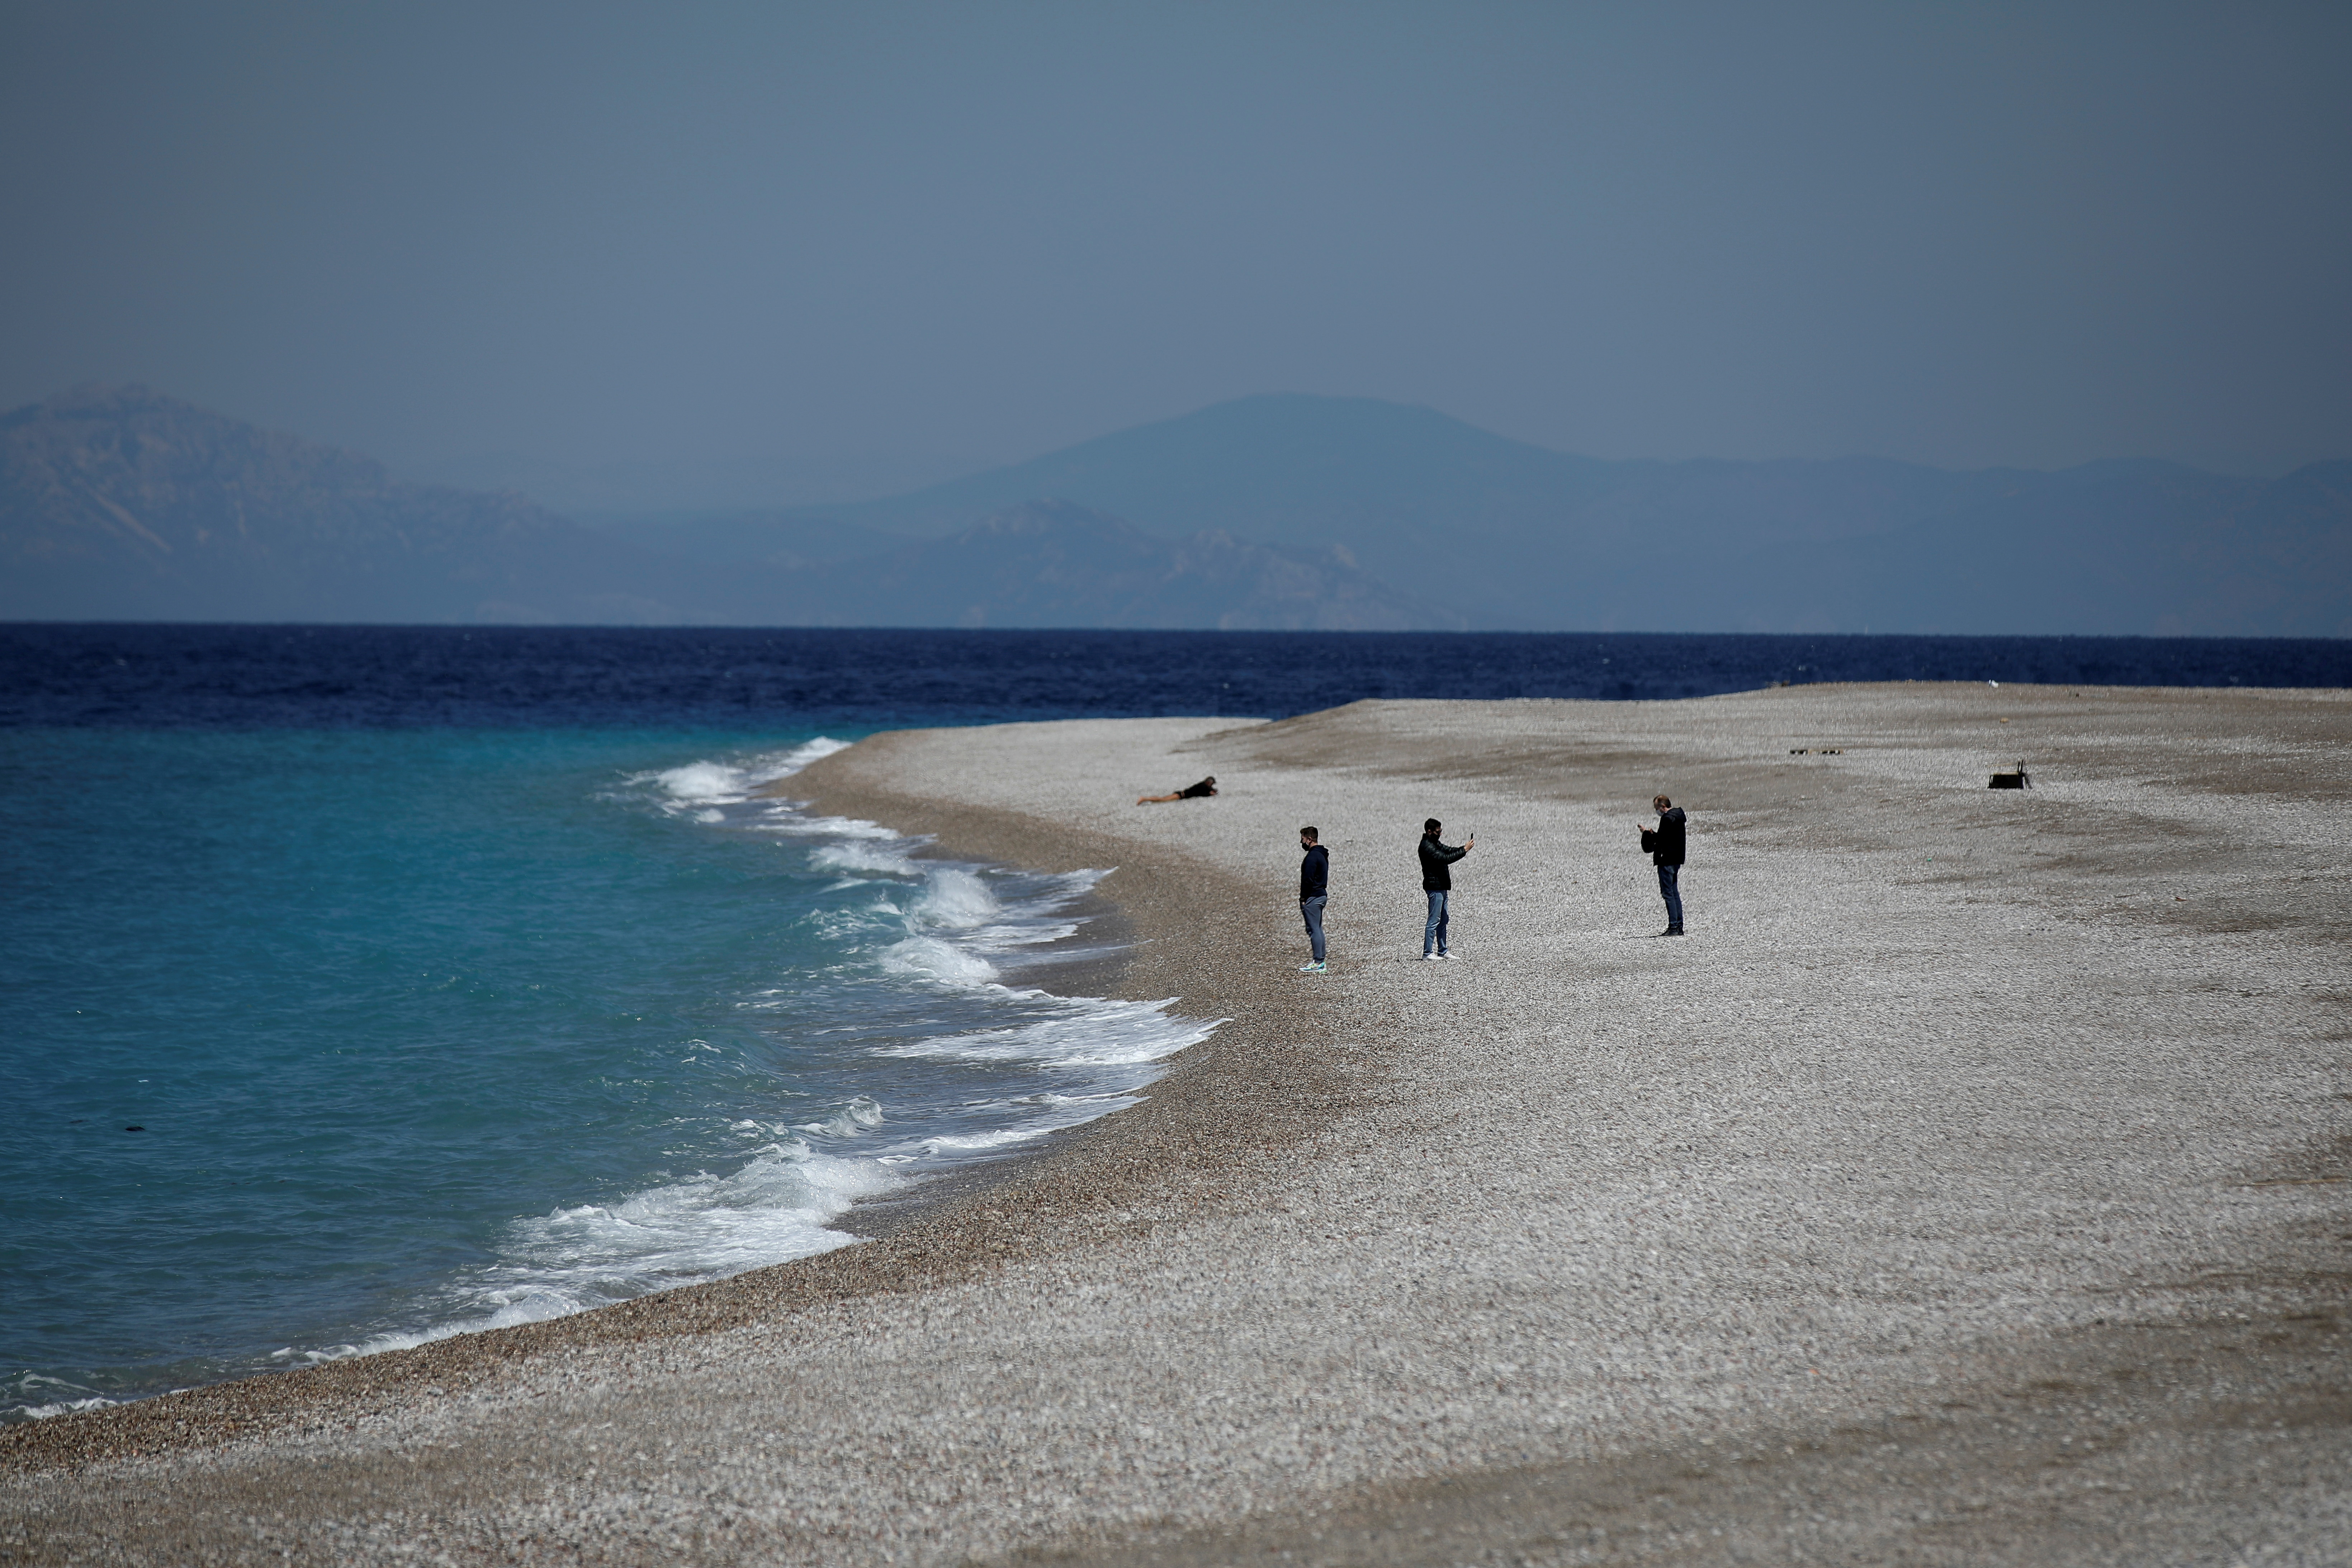 لوگ ایلی بیچ پر کھڑے ہیں ، کورونا وائرس بیماری (COVID-19) وبائی امراض کے درمیان ، روڈس جزیرے ، یونان ، 12 اپریل ، 2021 پر۔